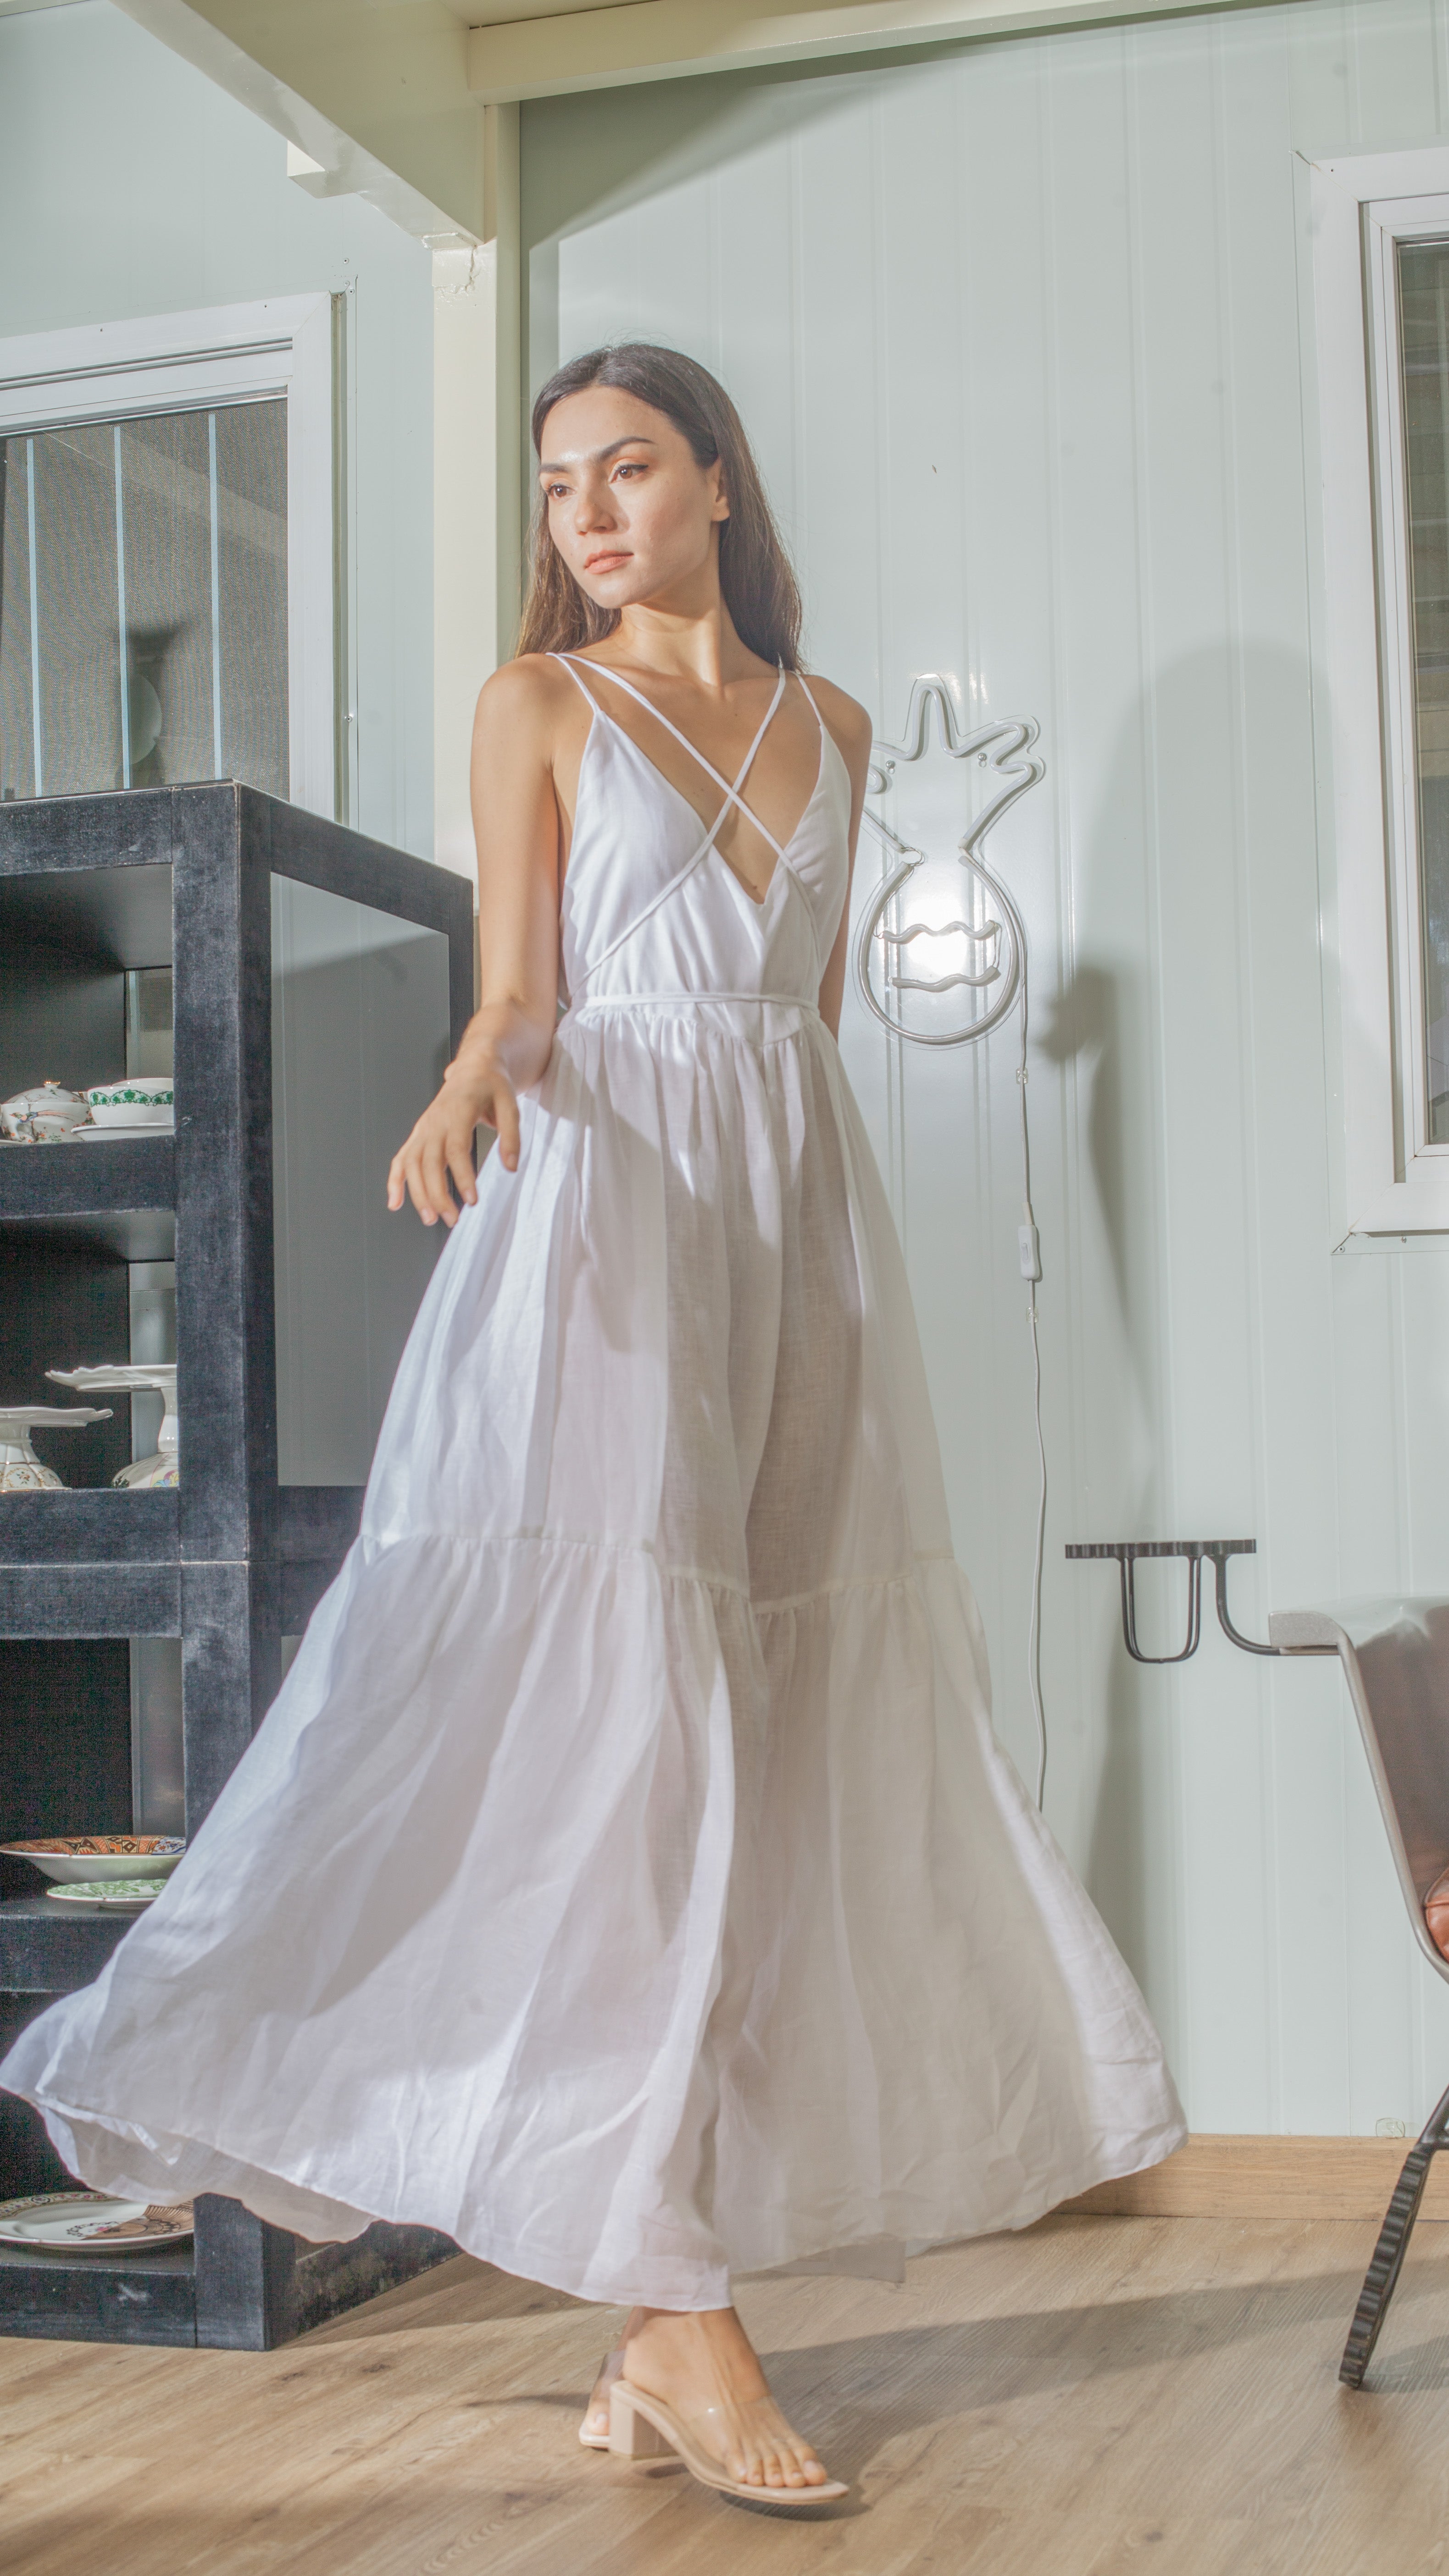 Double Strap V-Neckline Long Dress in White Linen